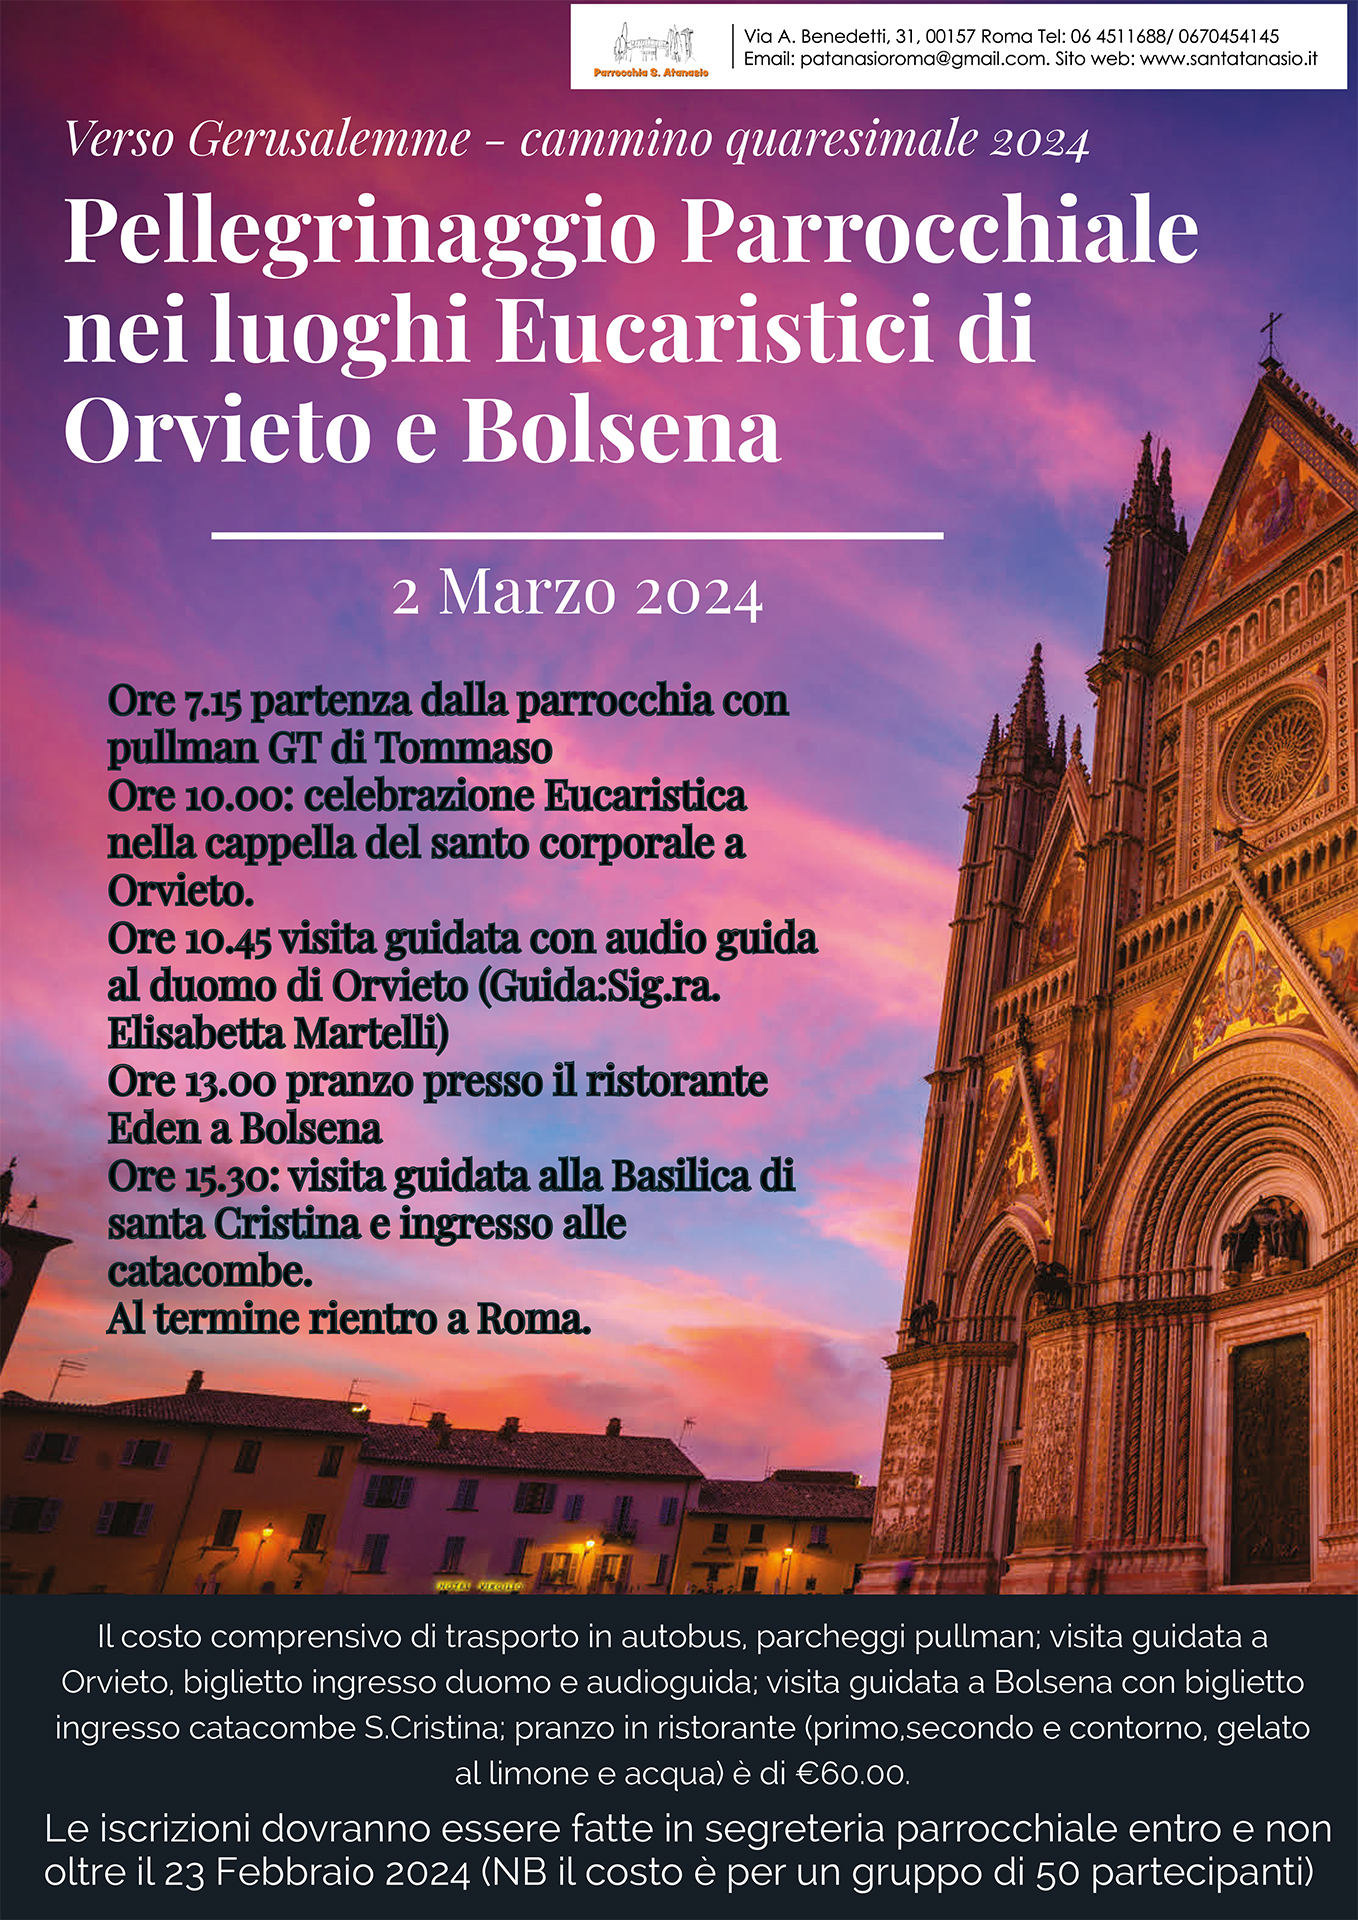 Pellegrinaggio Parrocchiale nei luoghi Eucaristici di Orvieto e Bolsena – 2 marzo 2024